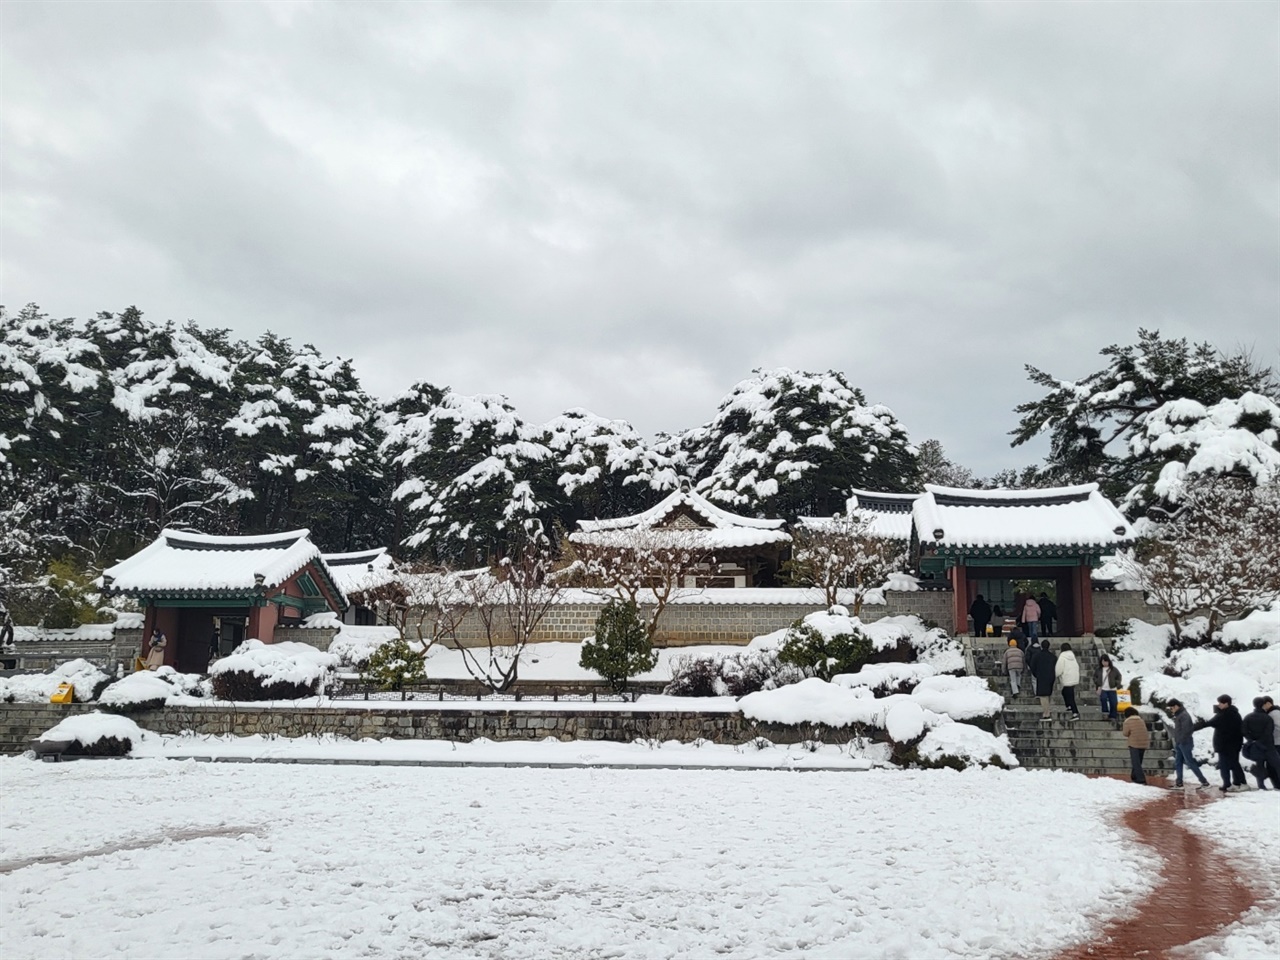 눈이 많이 내렸는데도 방문객이 많았다.